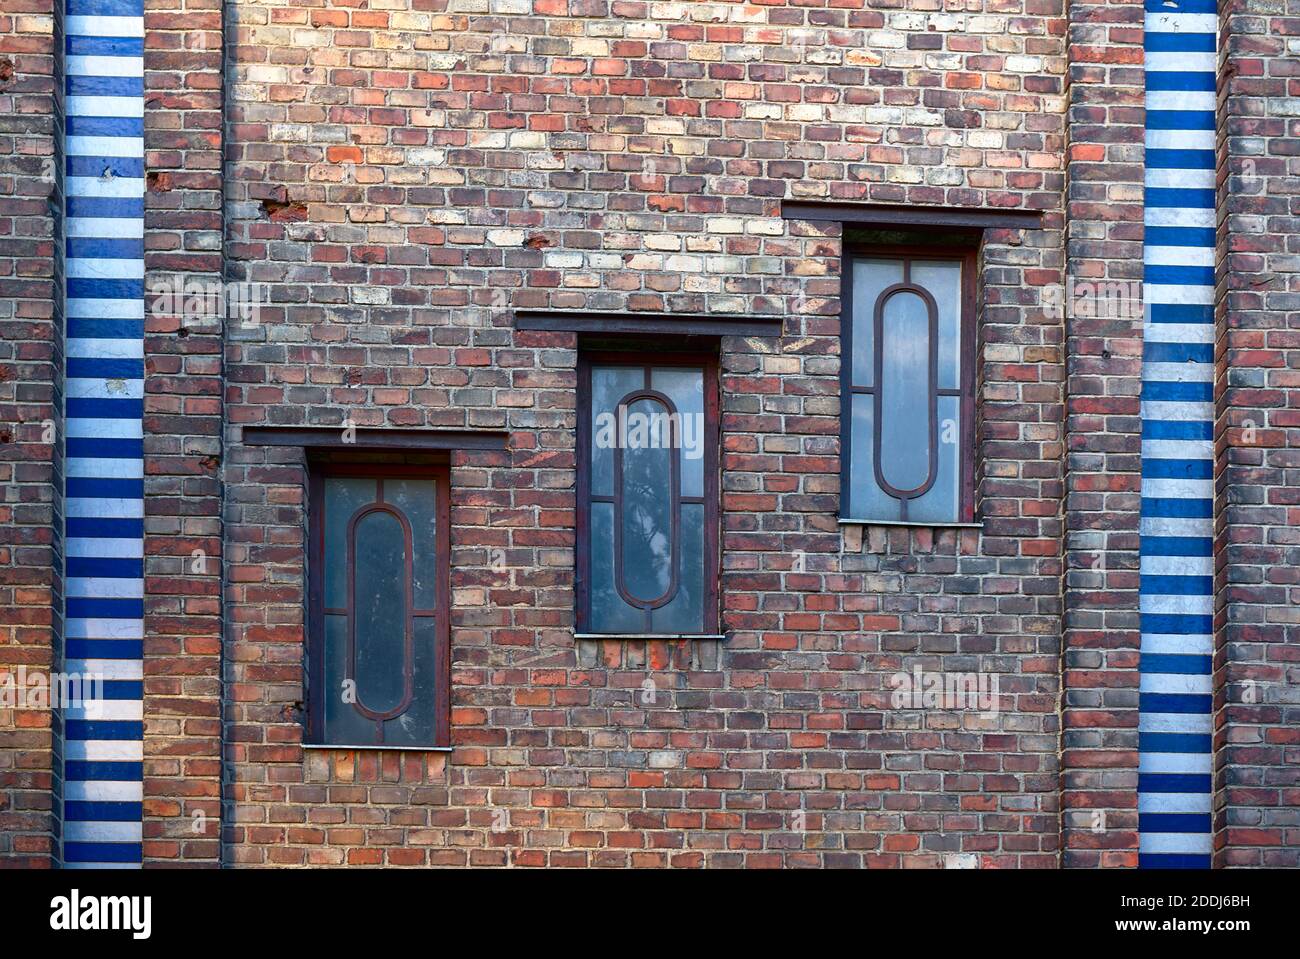 drei Fenster eines Ziegelbau/Backsteinbau's mit farbiger Umrandung Foto Stock